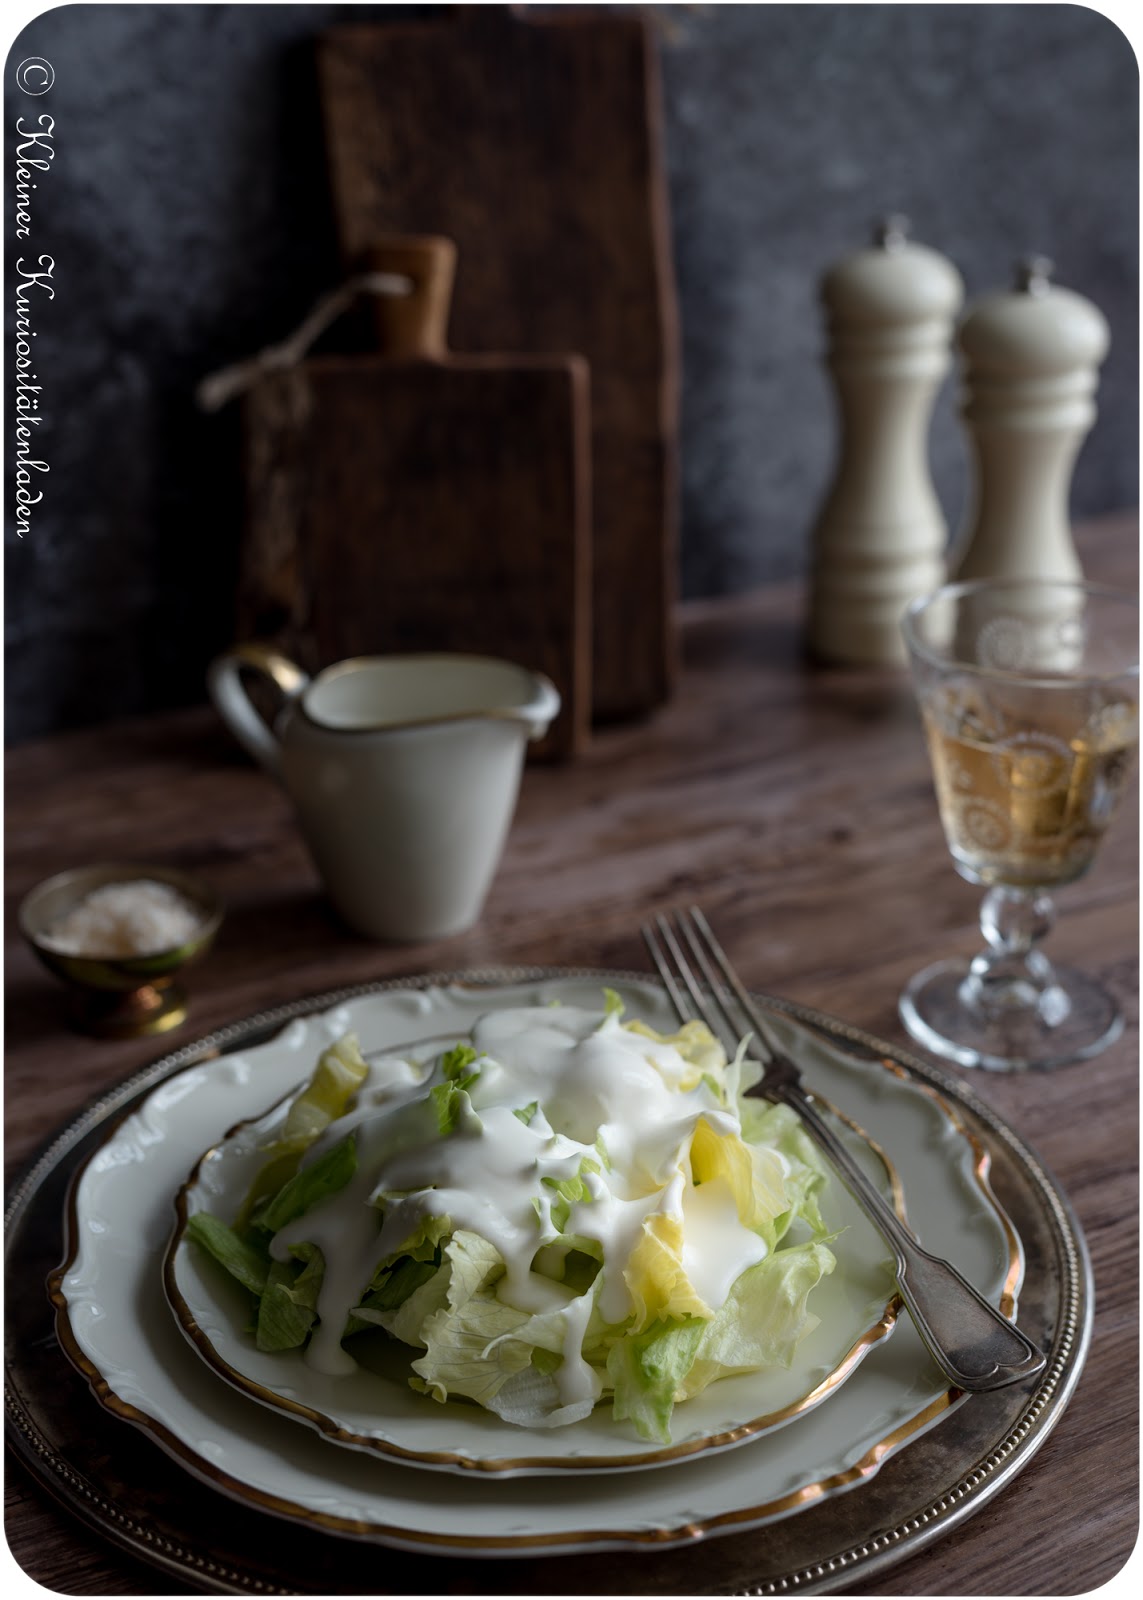 Eisbergsalat mit aufgeschlagenem Zitronen-Sahne-Dressing